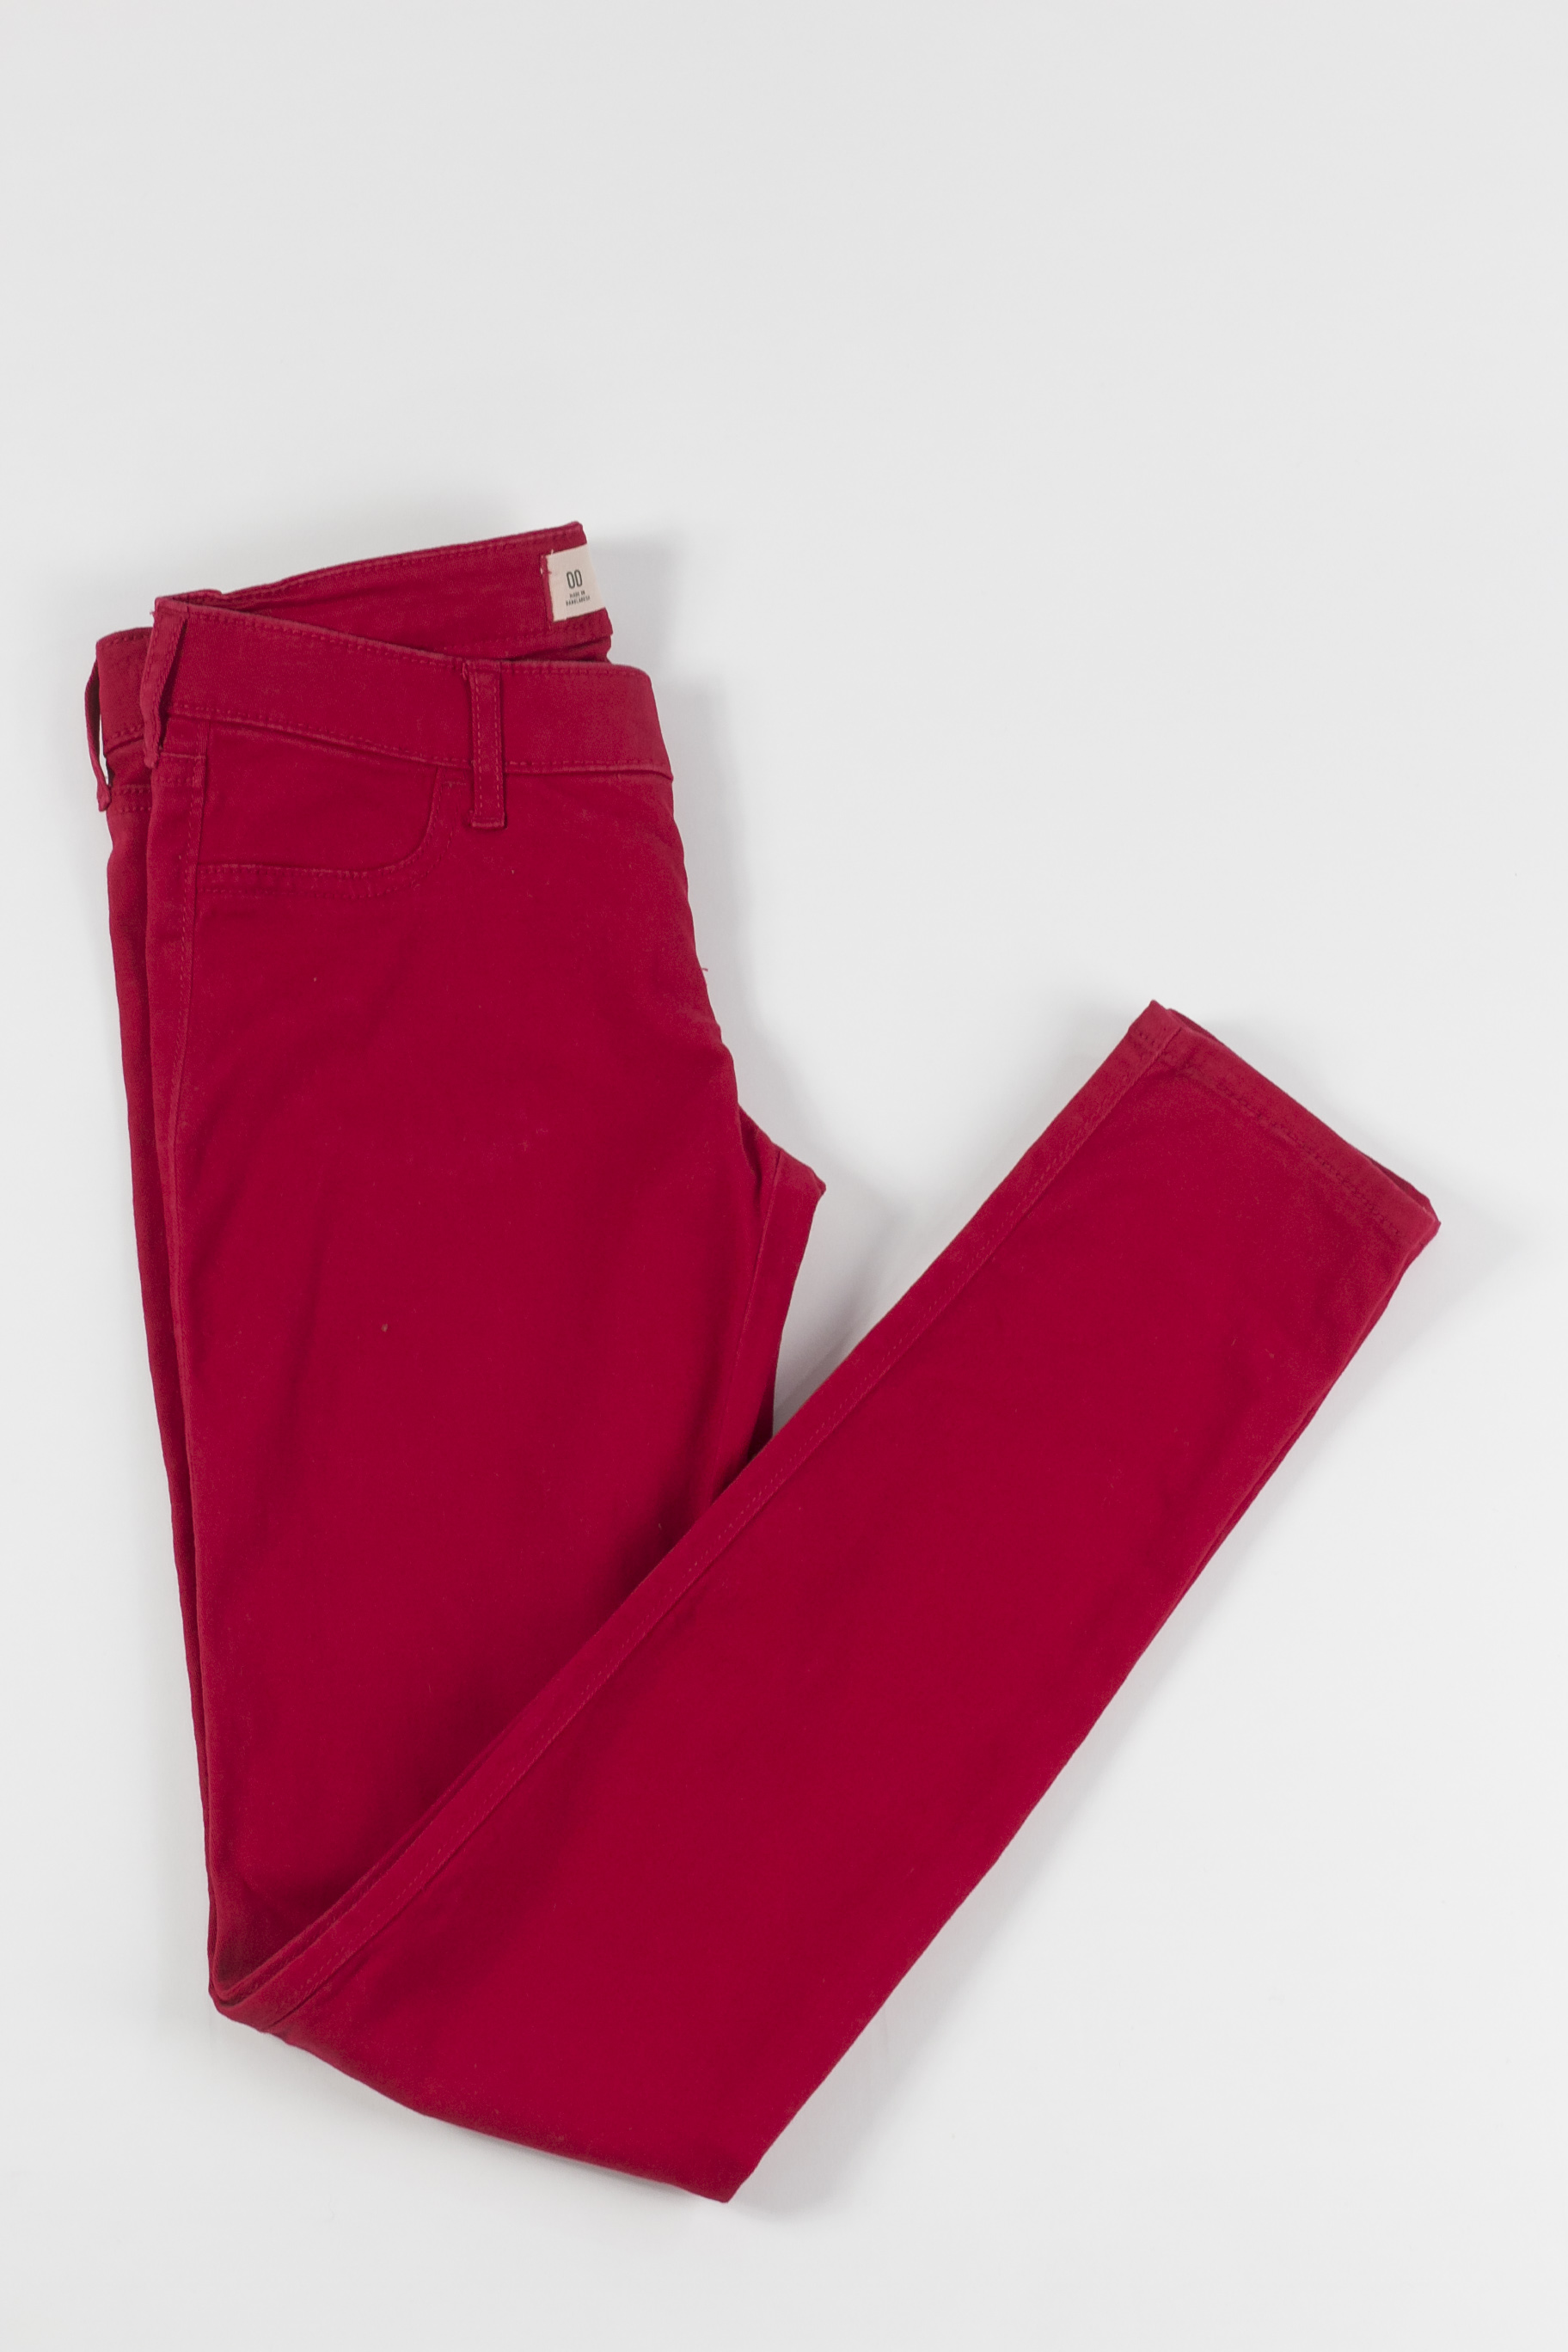 calça sarja vermelha